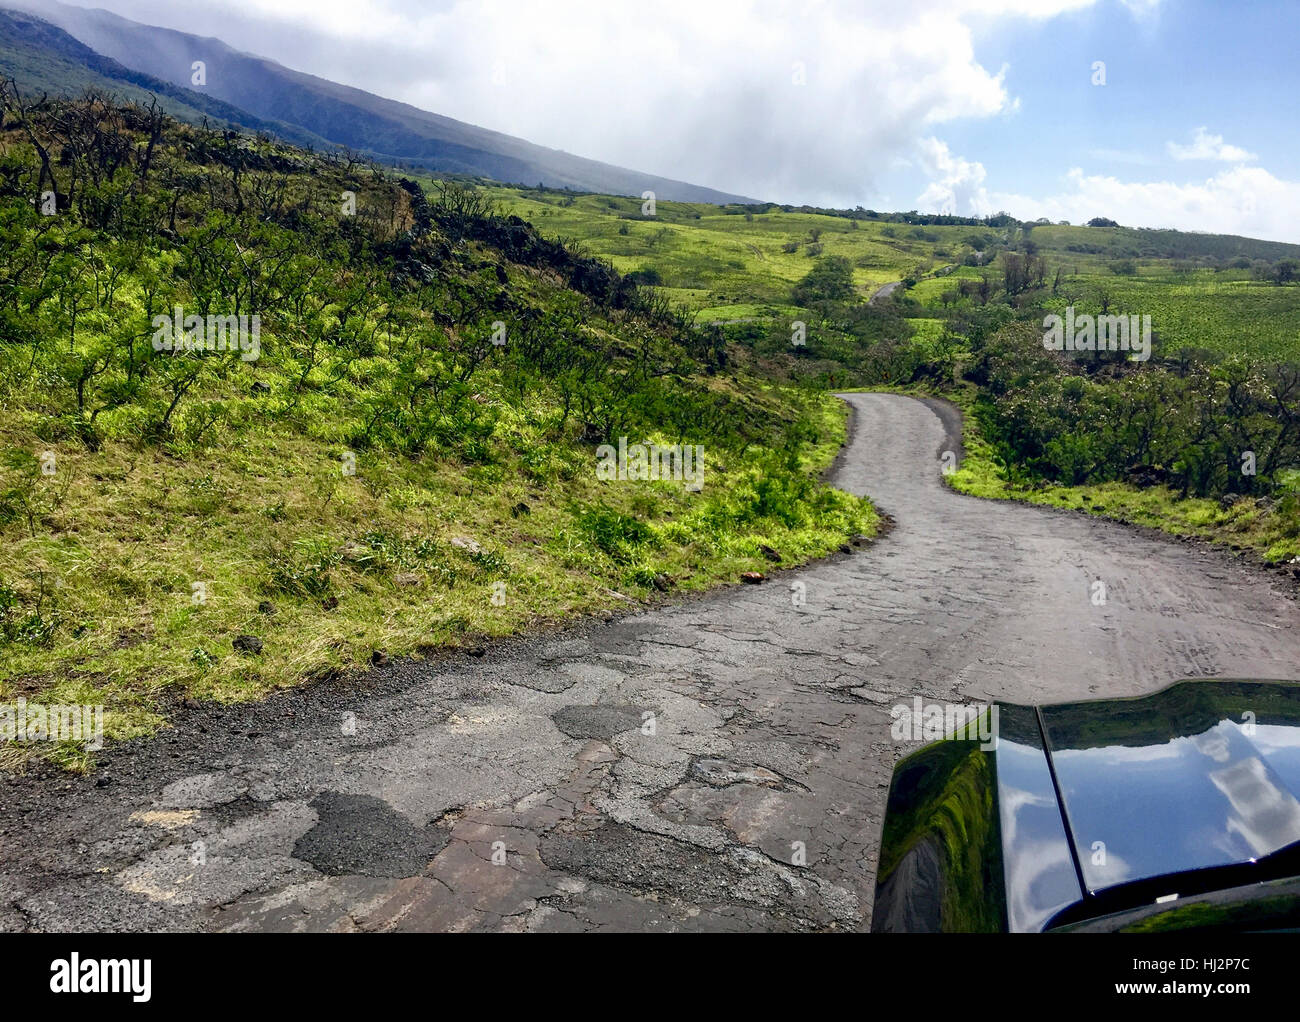 À peu près une route pavée à travers une montagne verte avec une voiture noire au premier plan. Banque D'Images